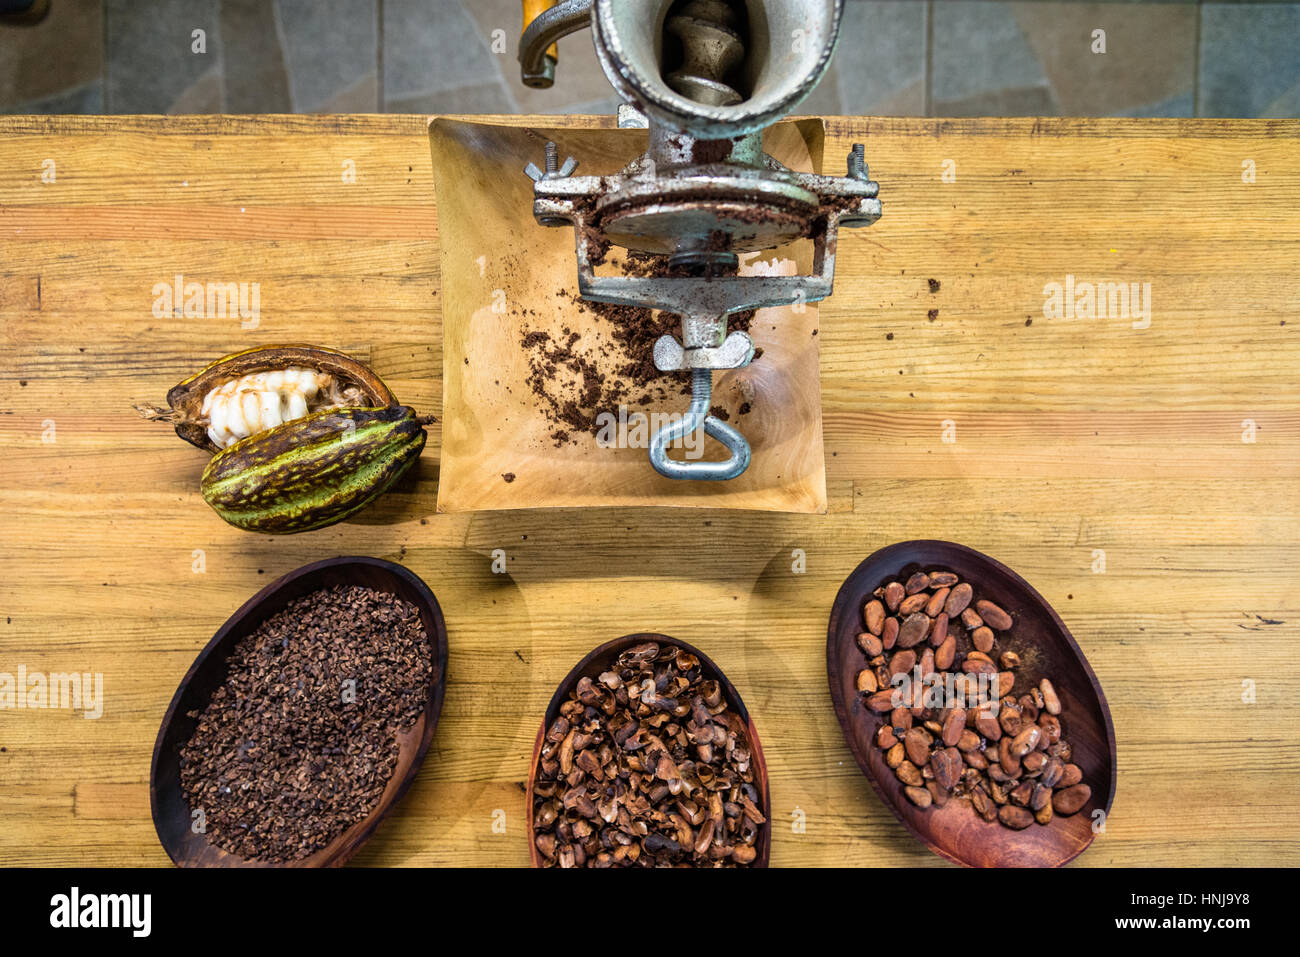 Les fèves de cacao avec moulin manuel à plusieurs stades de la production, la Guadeloupe Banque D'Images